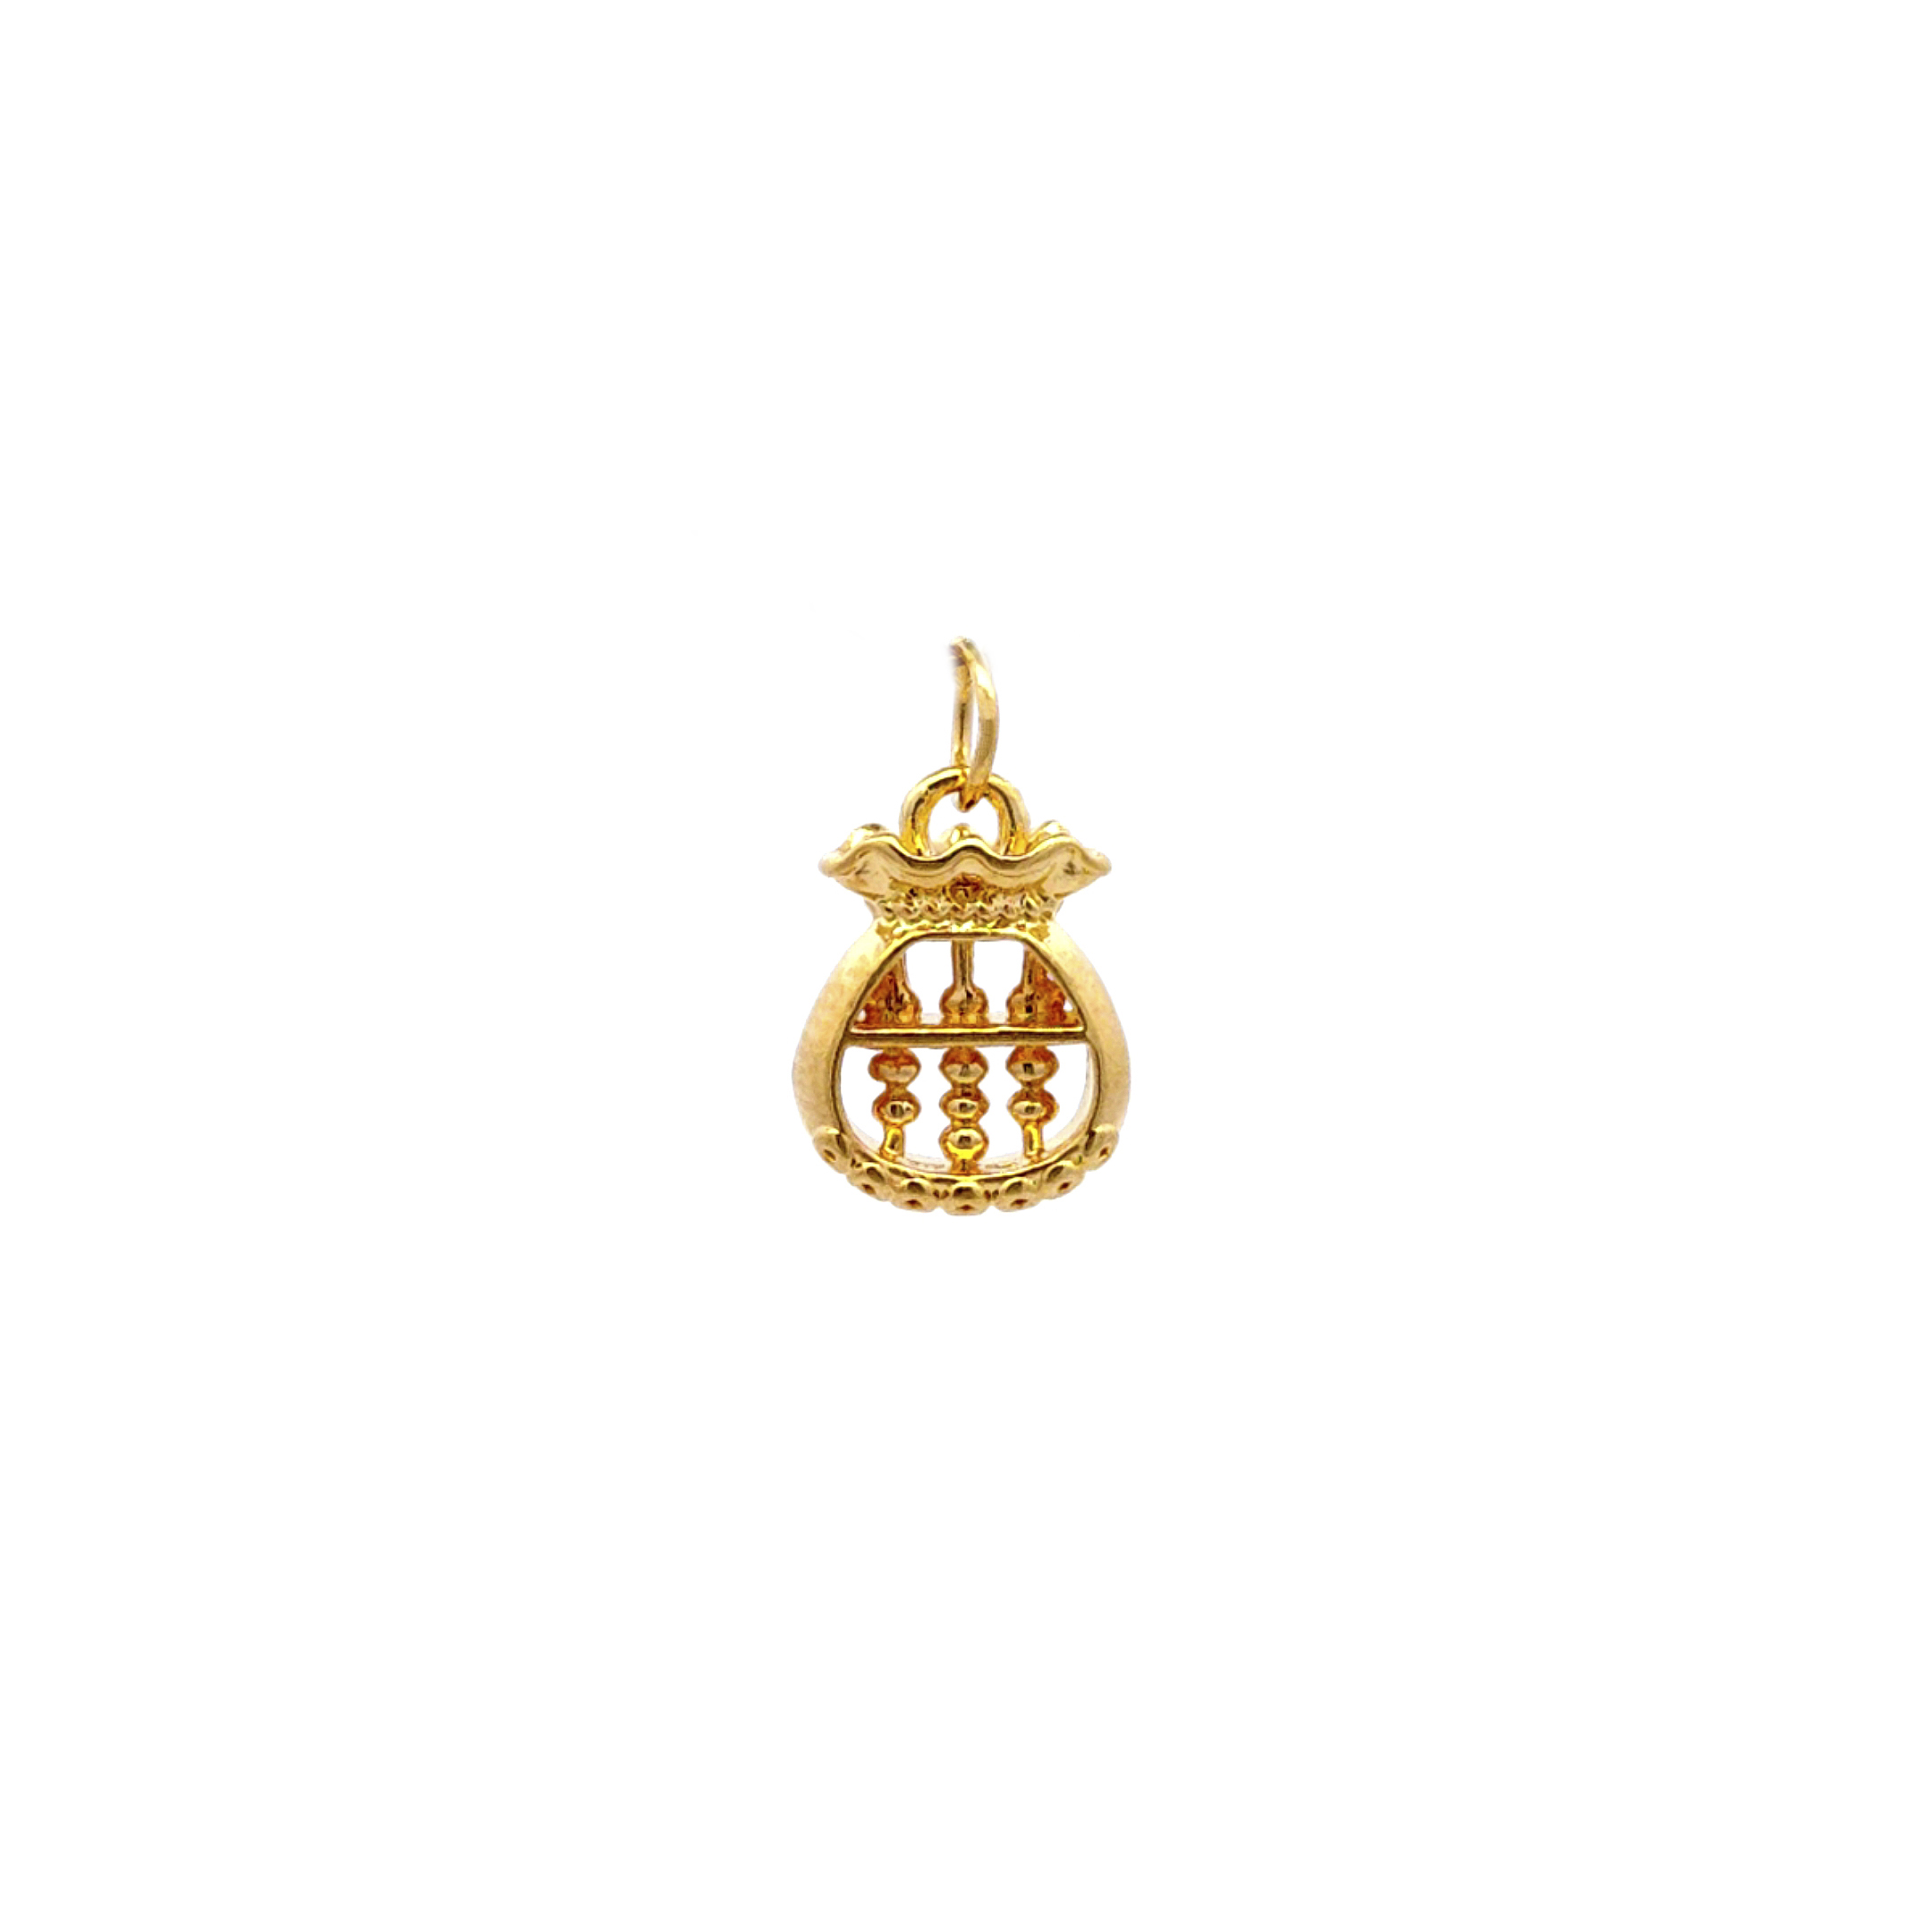 TIANSI 999 (24K) Gold Lucky Bag Abacus Pendant